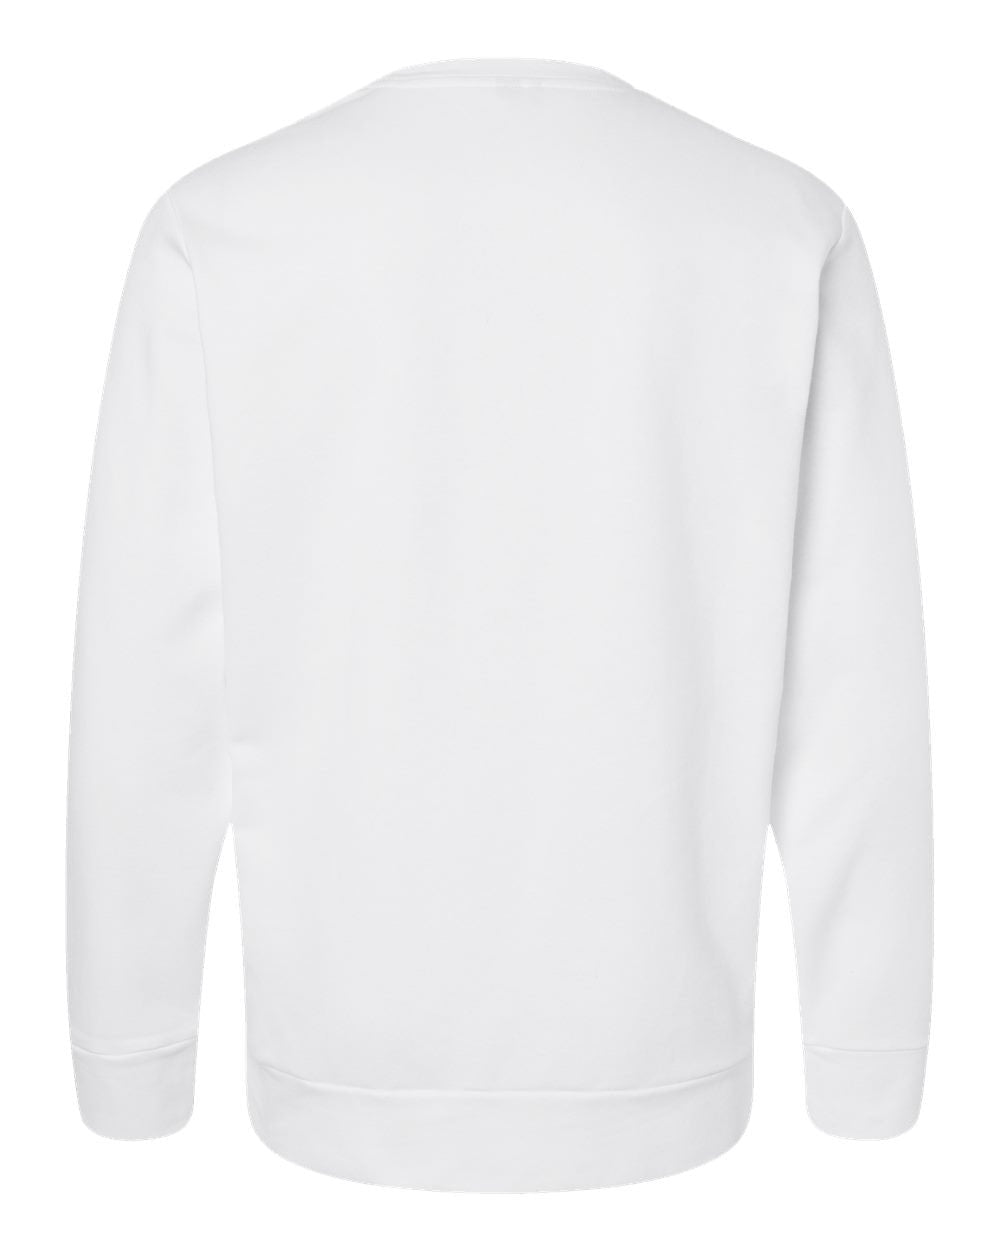 Adidas A434 Fleece Crewneck Sweatshirt #color_White